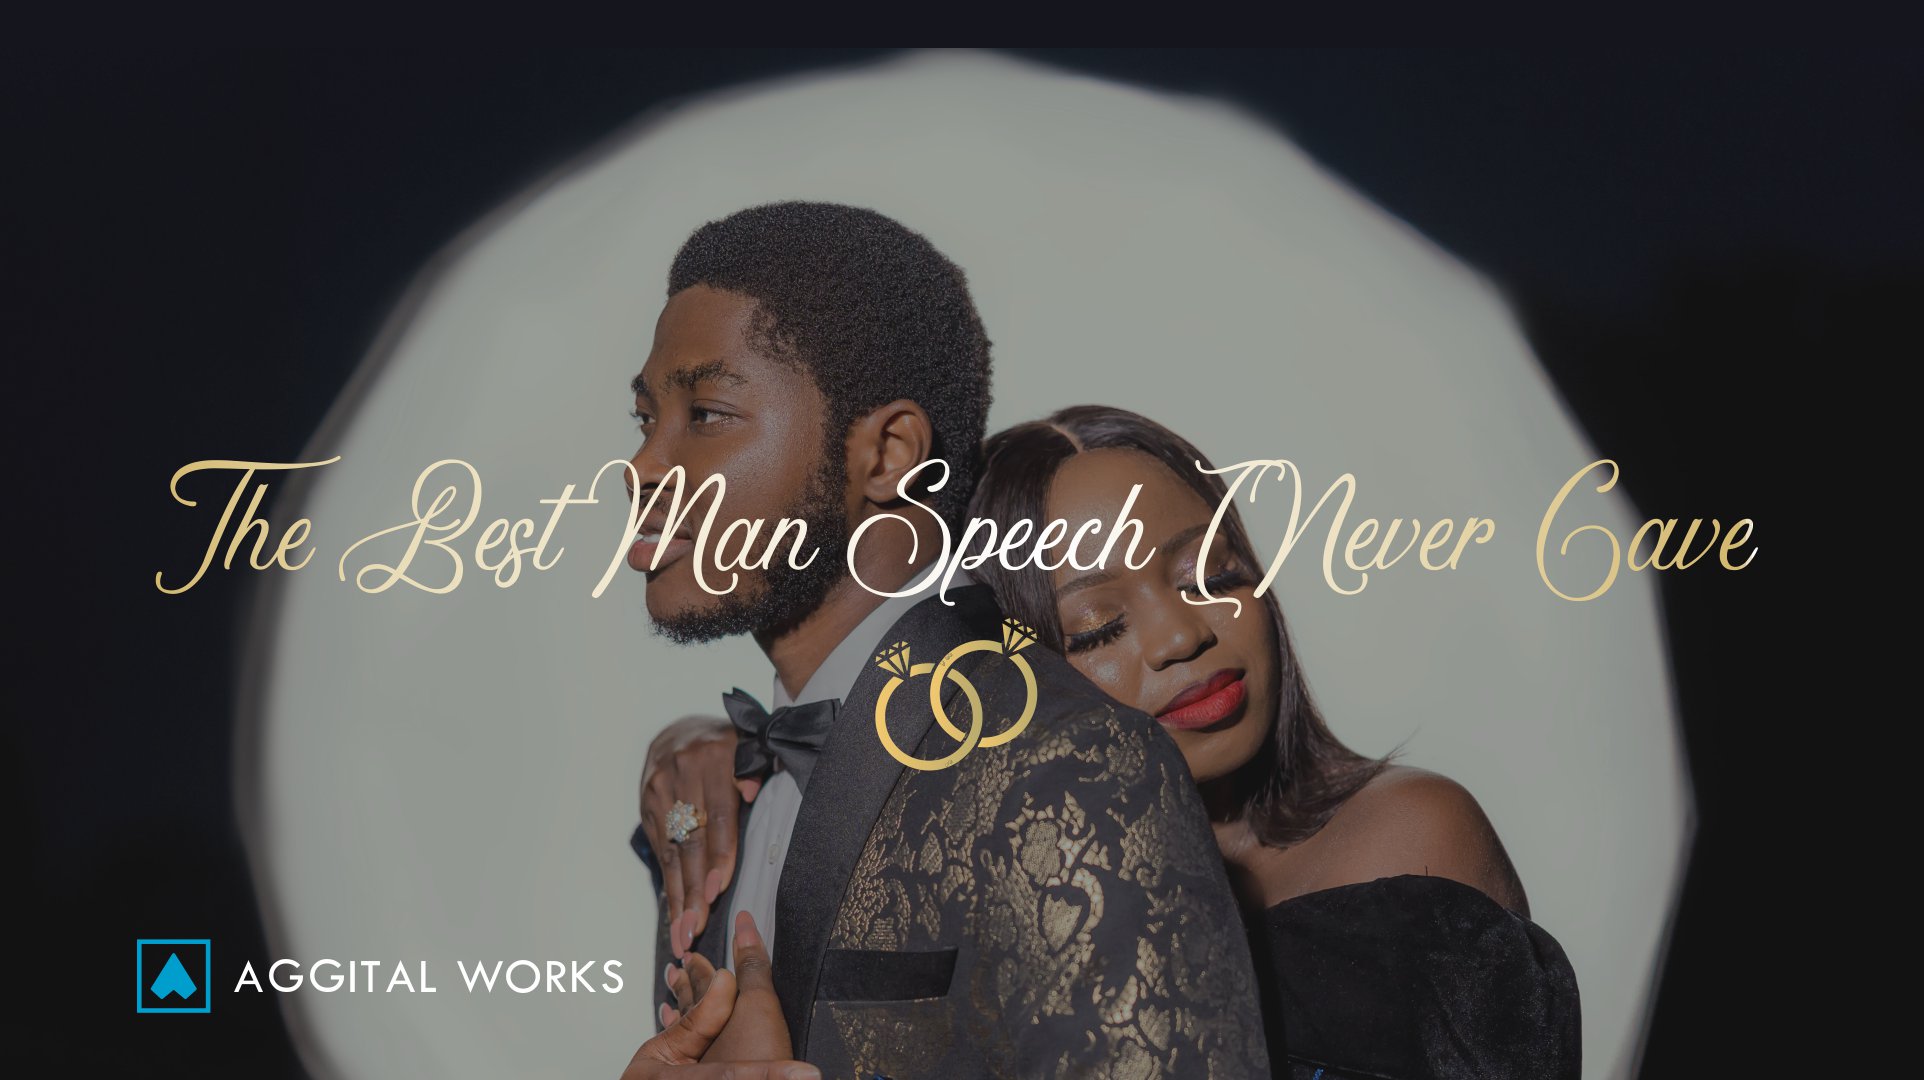 best man speech